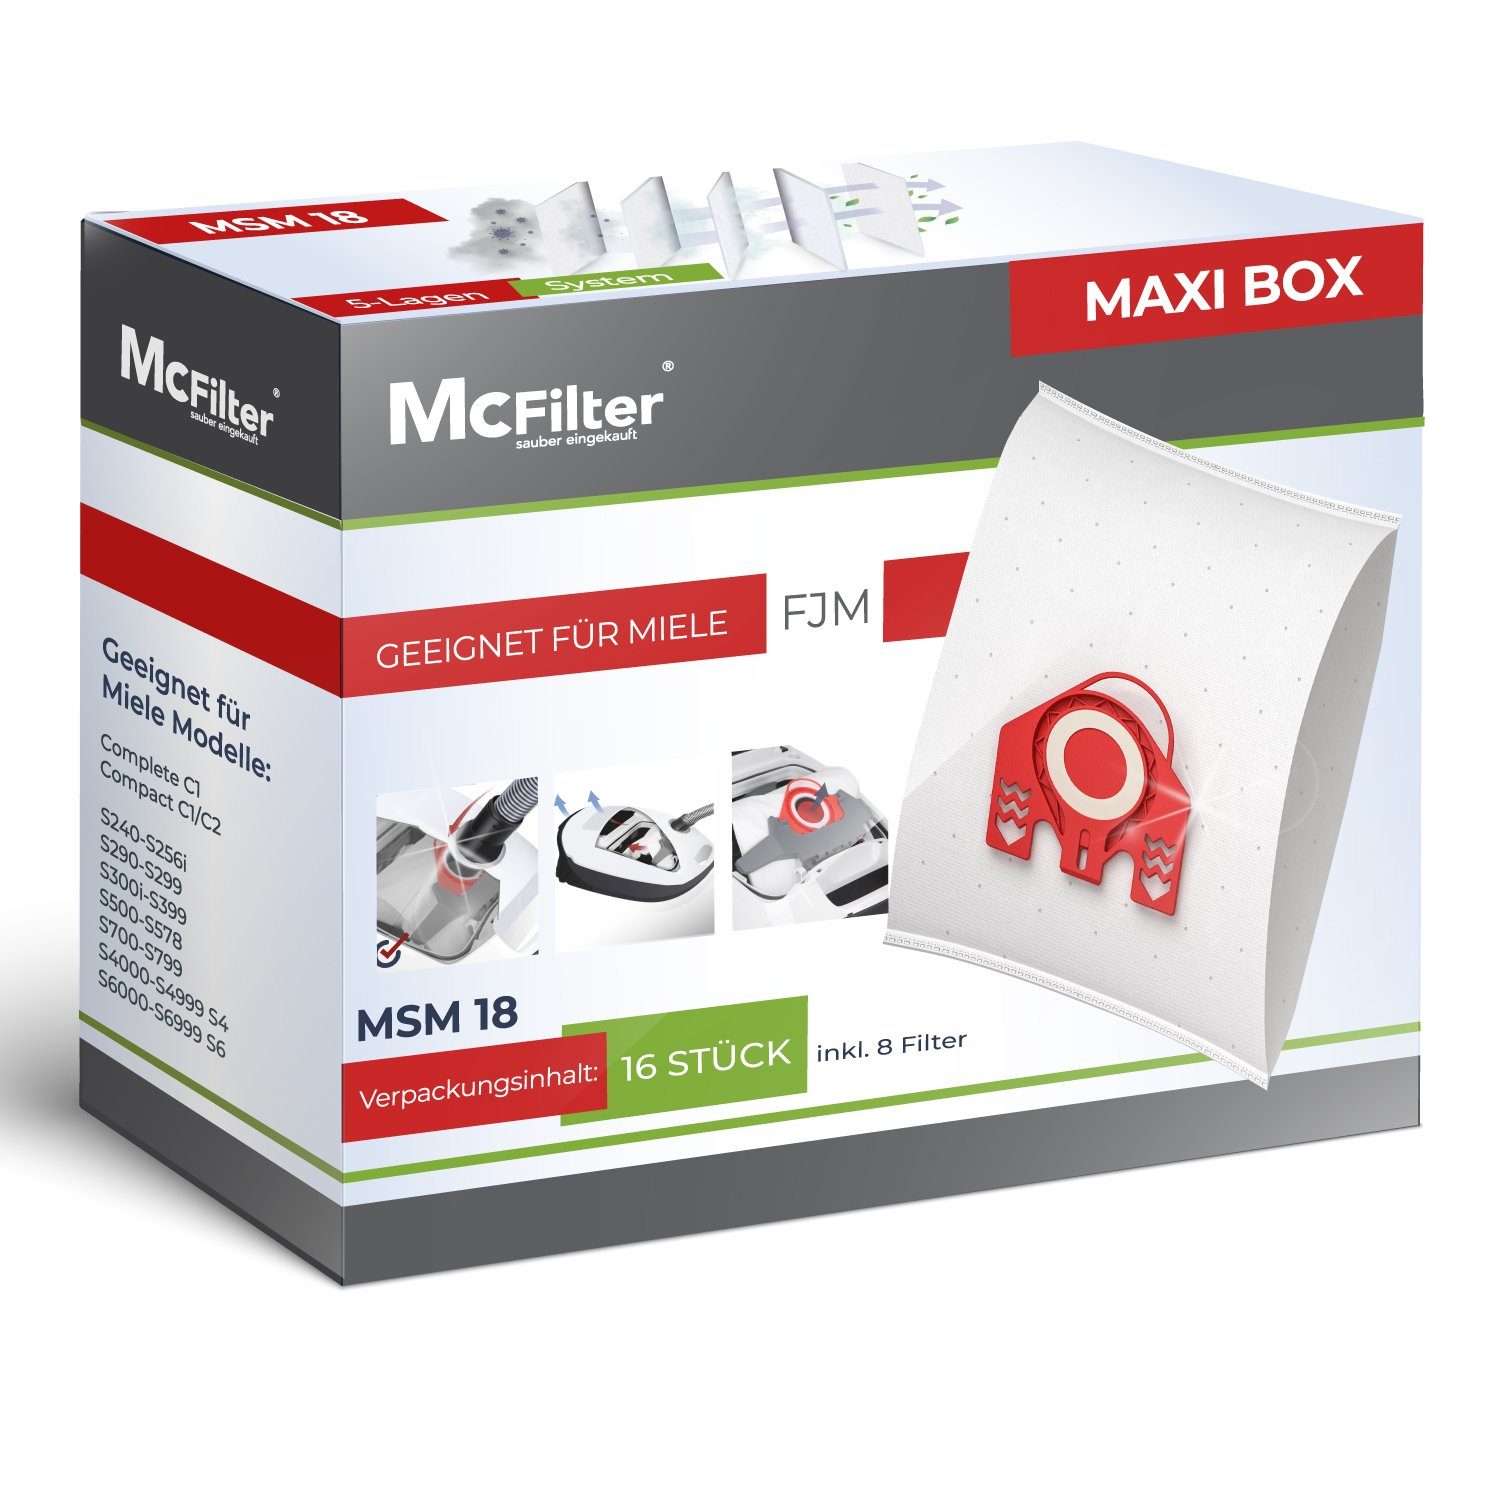 BOX McFilter Plus zu Miele inkl. Miele Alternative St., 16 S712-1 Jazz Staubsaugerbeutel 9917710, Top für 16+8, Filter, passend S371, Staubsauger, 8 MAXI 10408420 wie